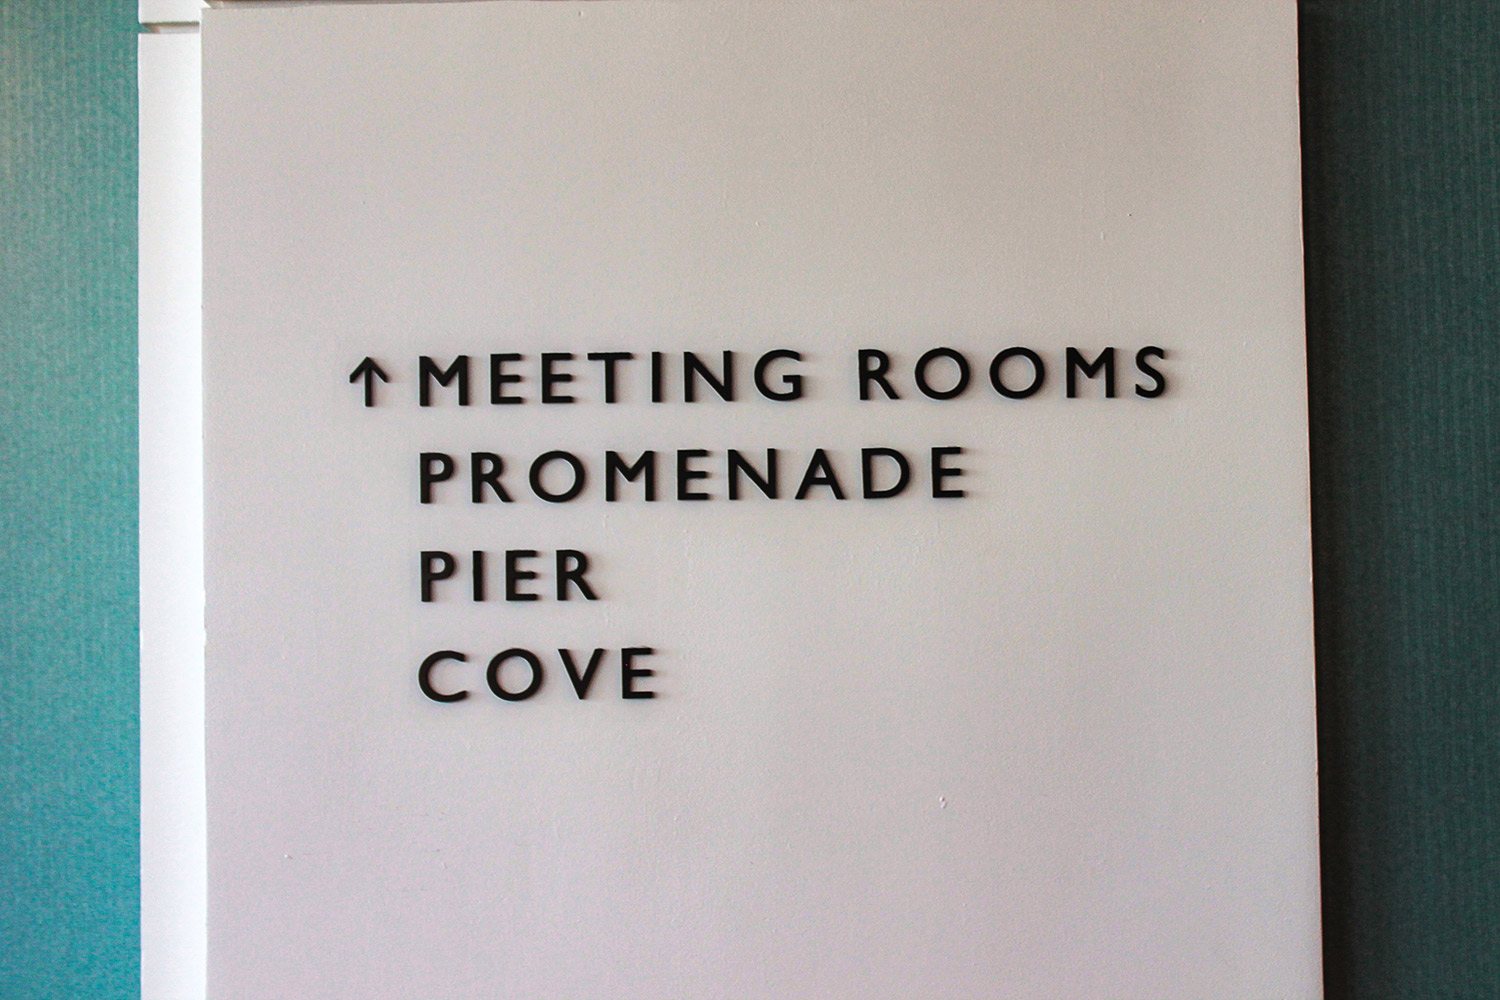 300-Hyatt-meeting-rooms-2